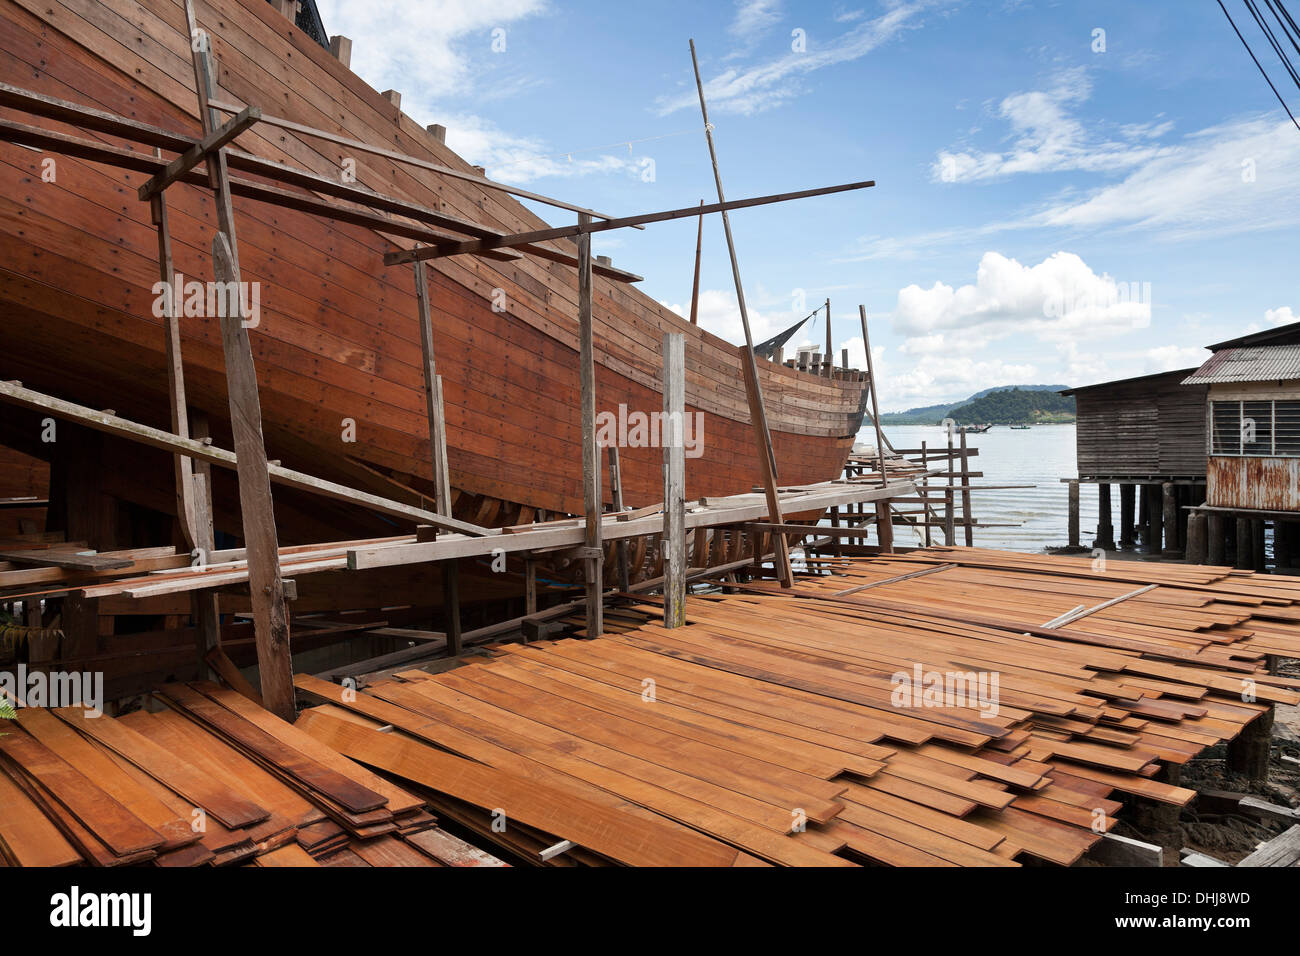 Hardwood boat building, Sungai Pinang Besar village, Pangkor island, Malaysia Stock Photo